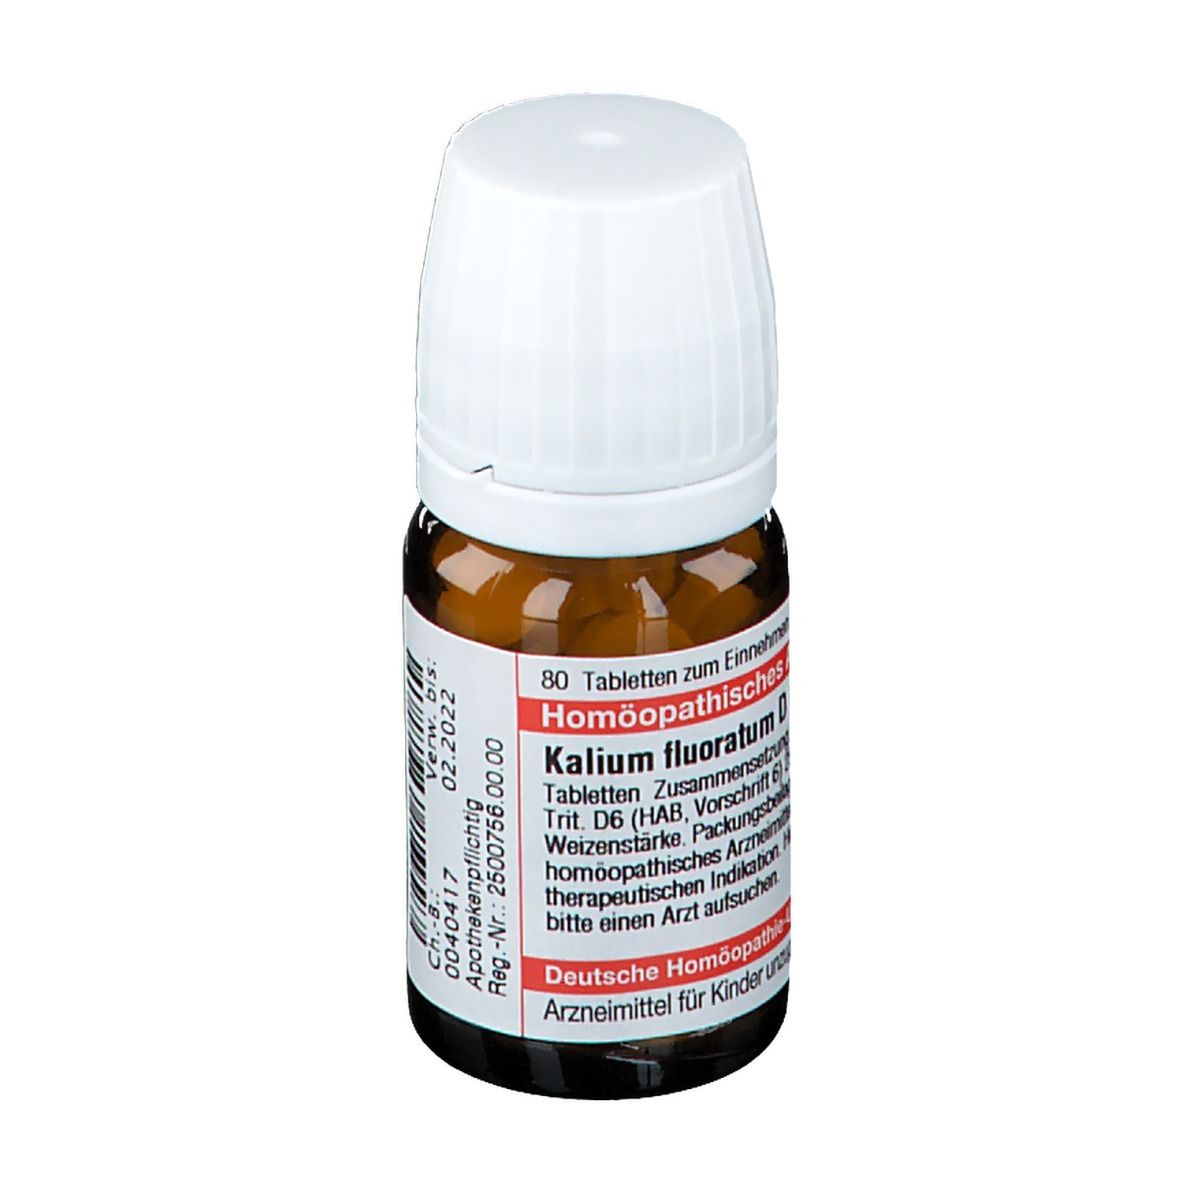 DHU Kalium Fluoratum D6